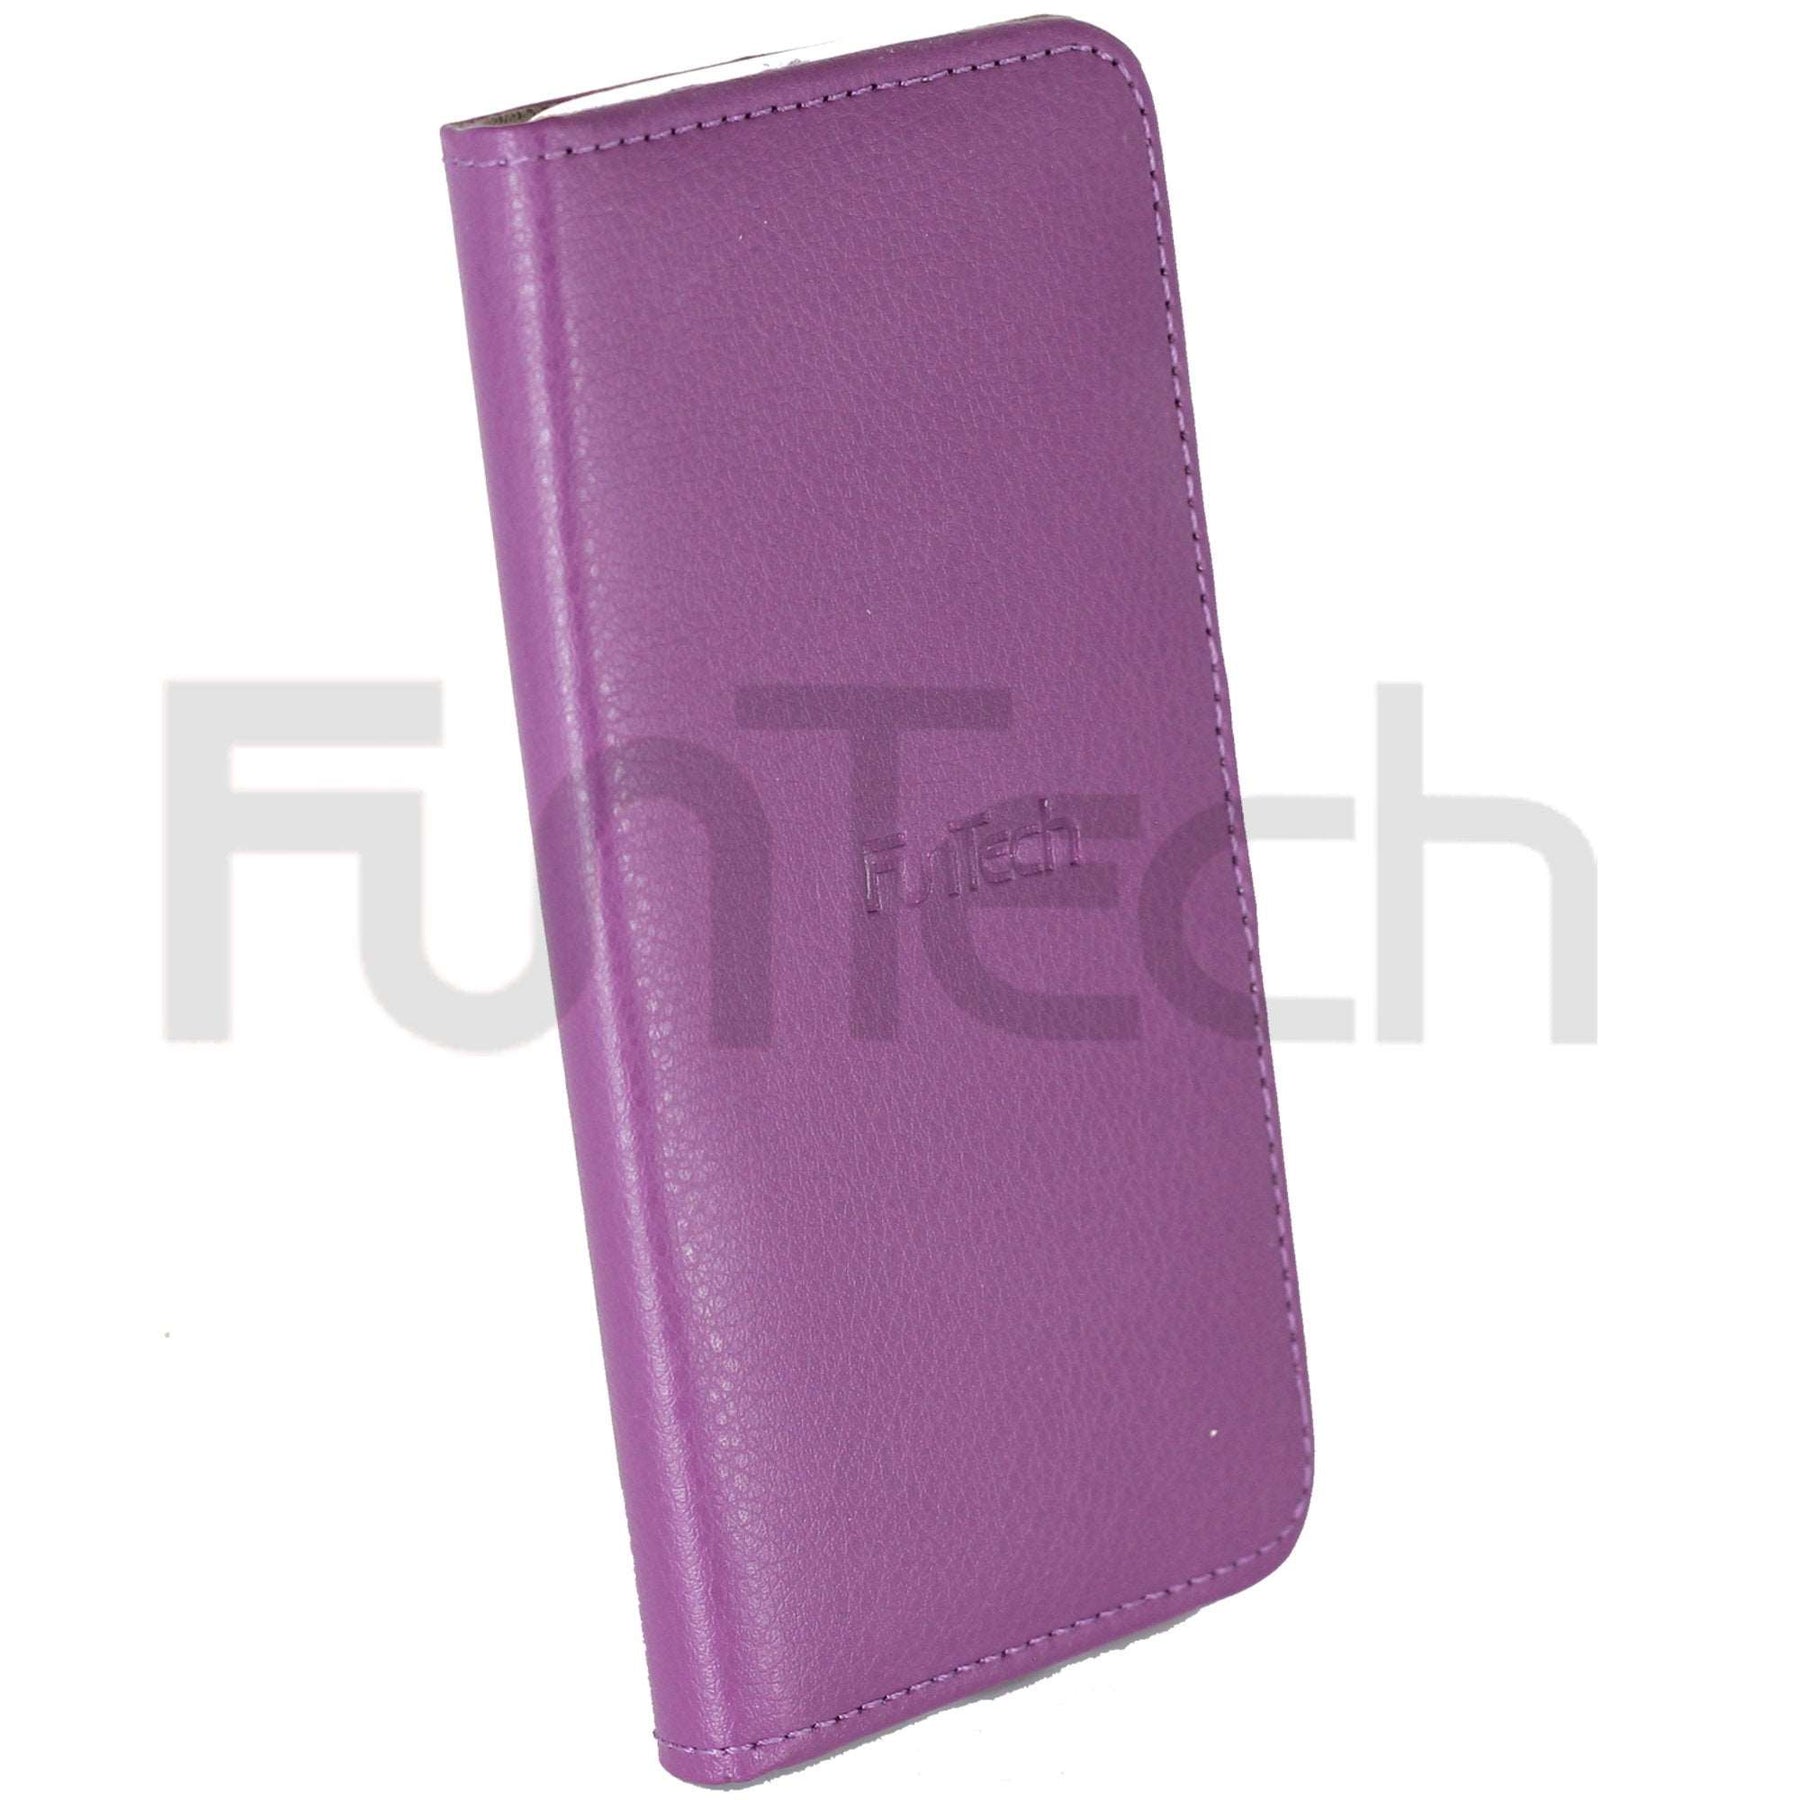 Apple iPhone X Leather Case Purple